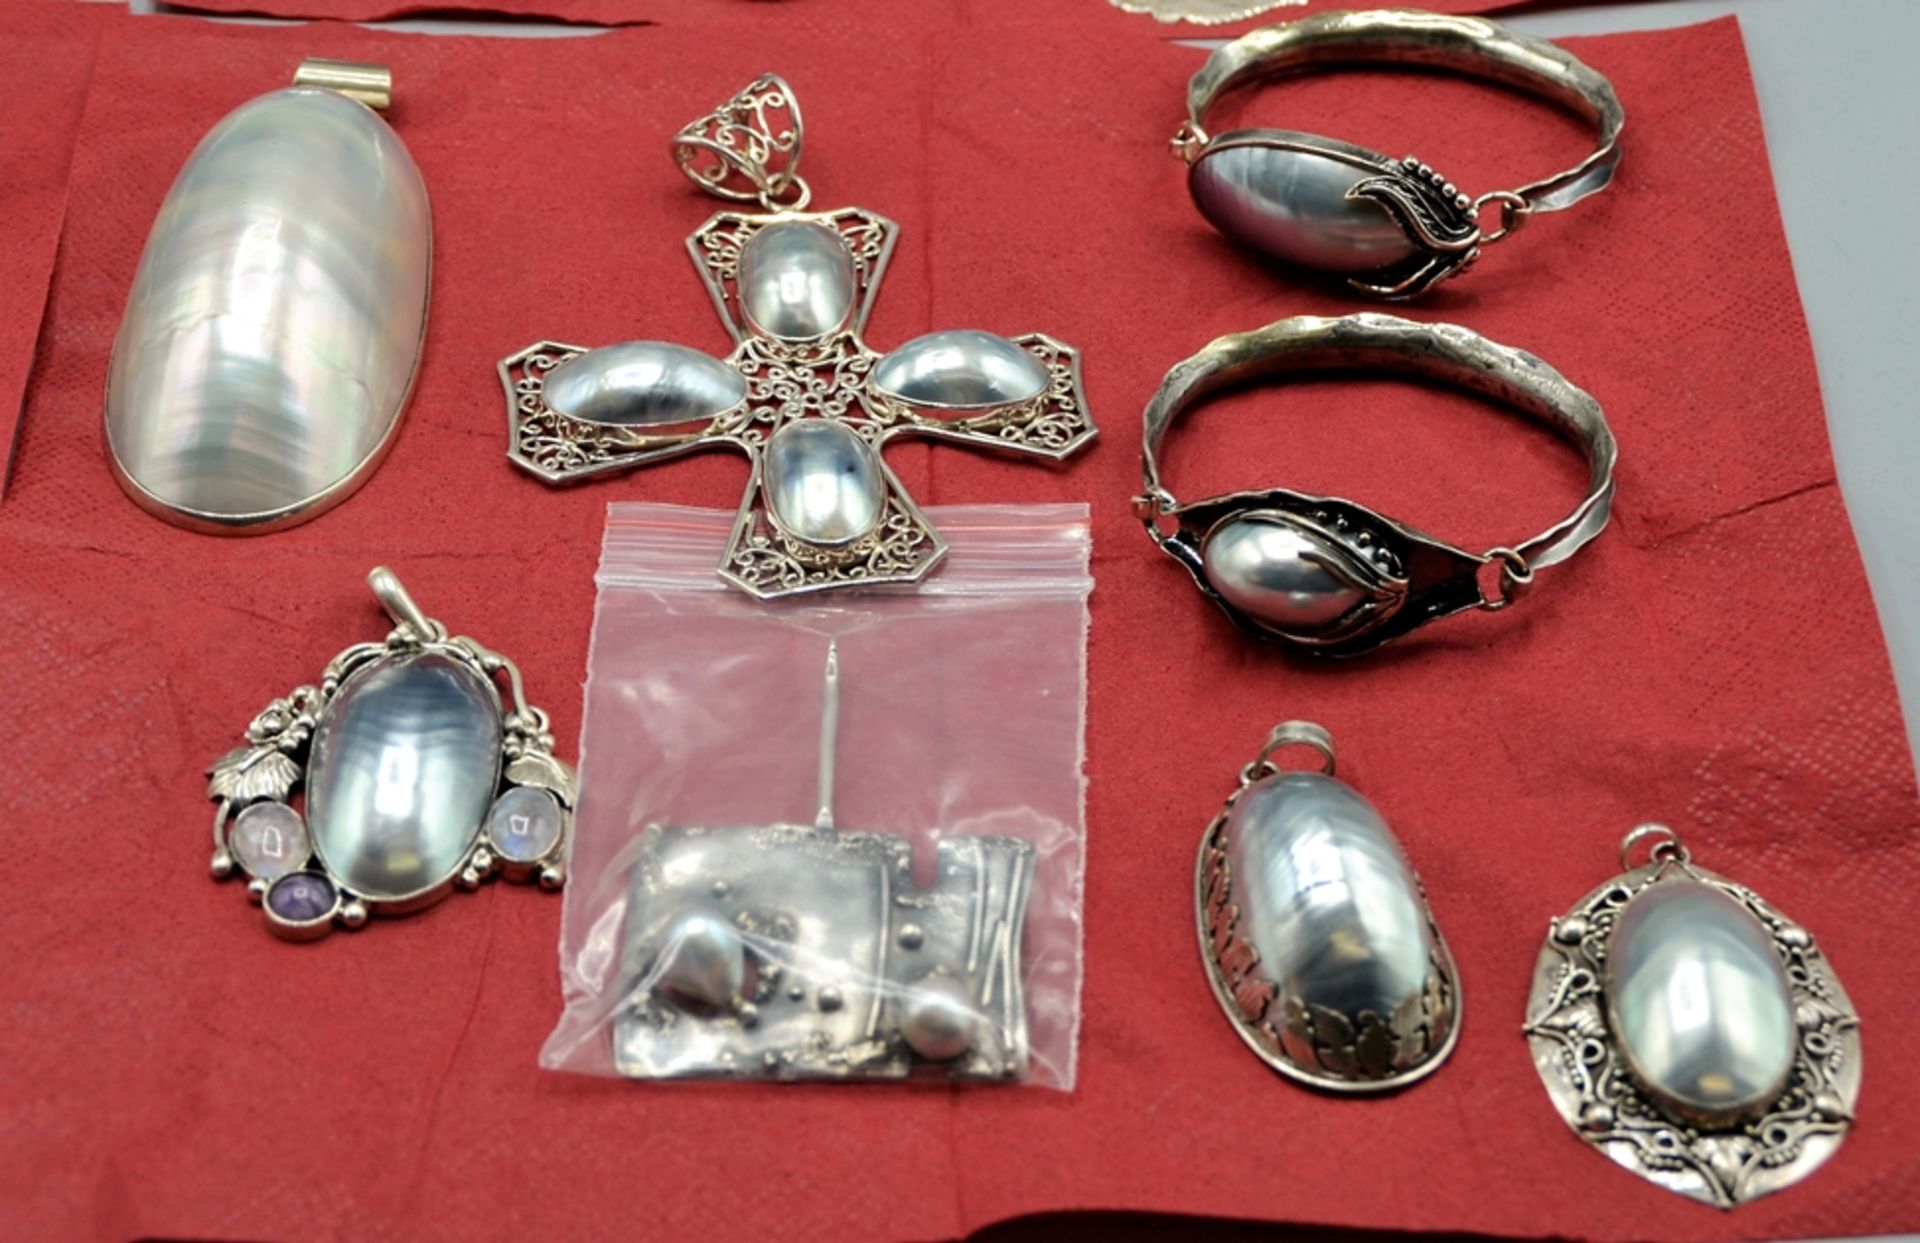 Perlmutt Perlen Silberschmuck sehr hochwertig Konvolut ca. 800 g, wunderschöne Perlmutt Schmuckstüc - Image 3 of 5